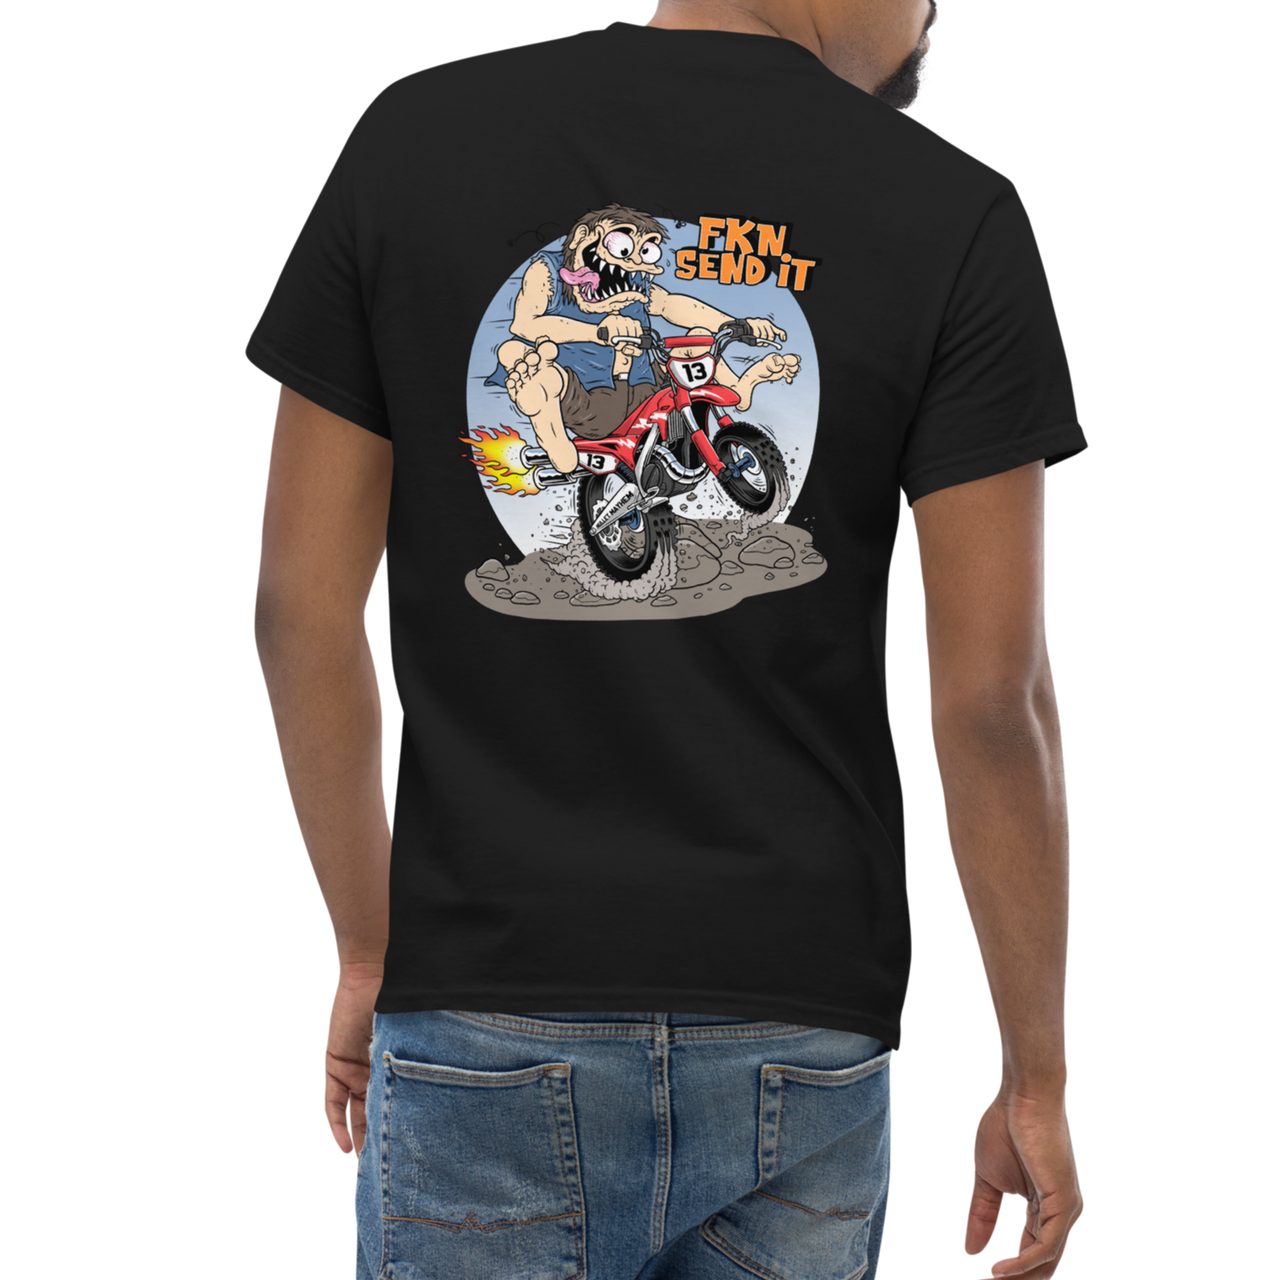 FKN SEND IT - Dirt Bike (t-shirt)